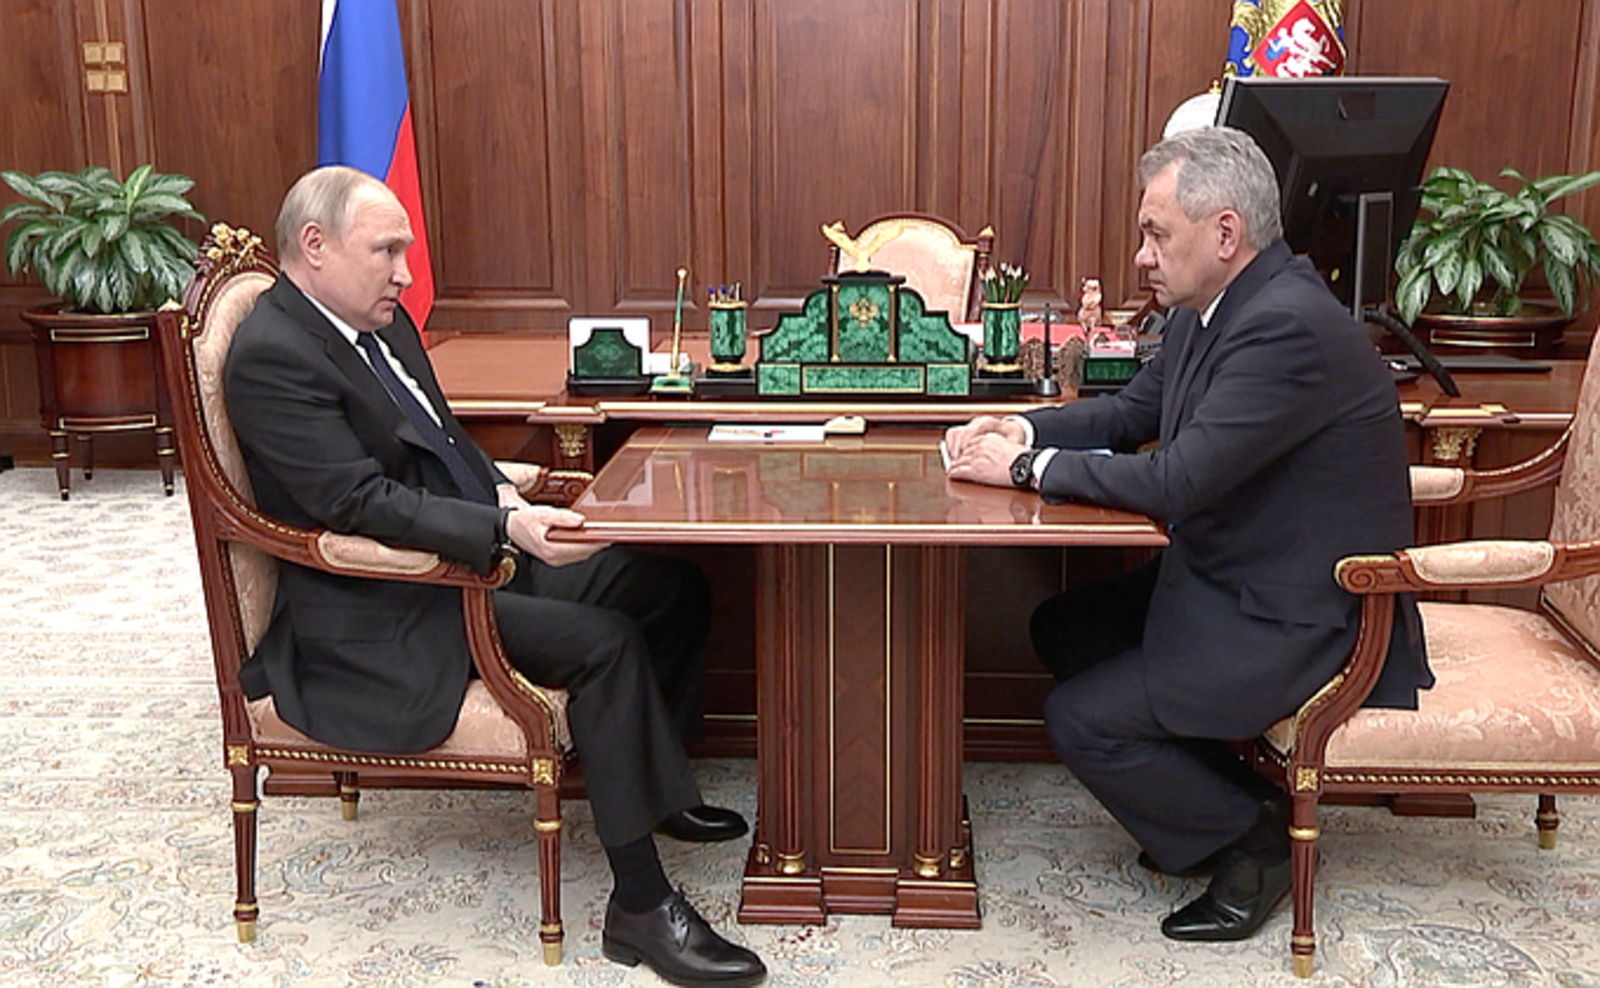 Состоялась рабочая встреча Владимира Путина с Министром обороны Российской Федерации Сергеем Шойгу.